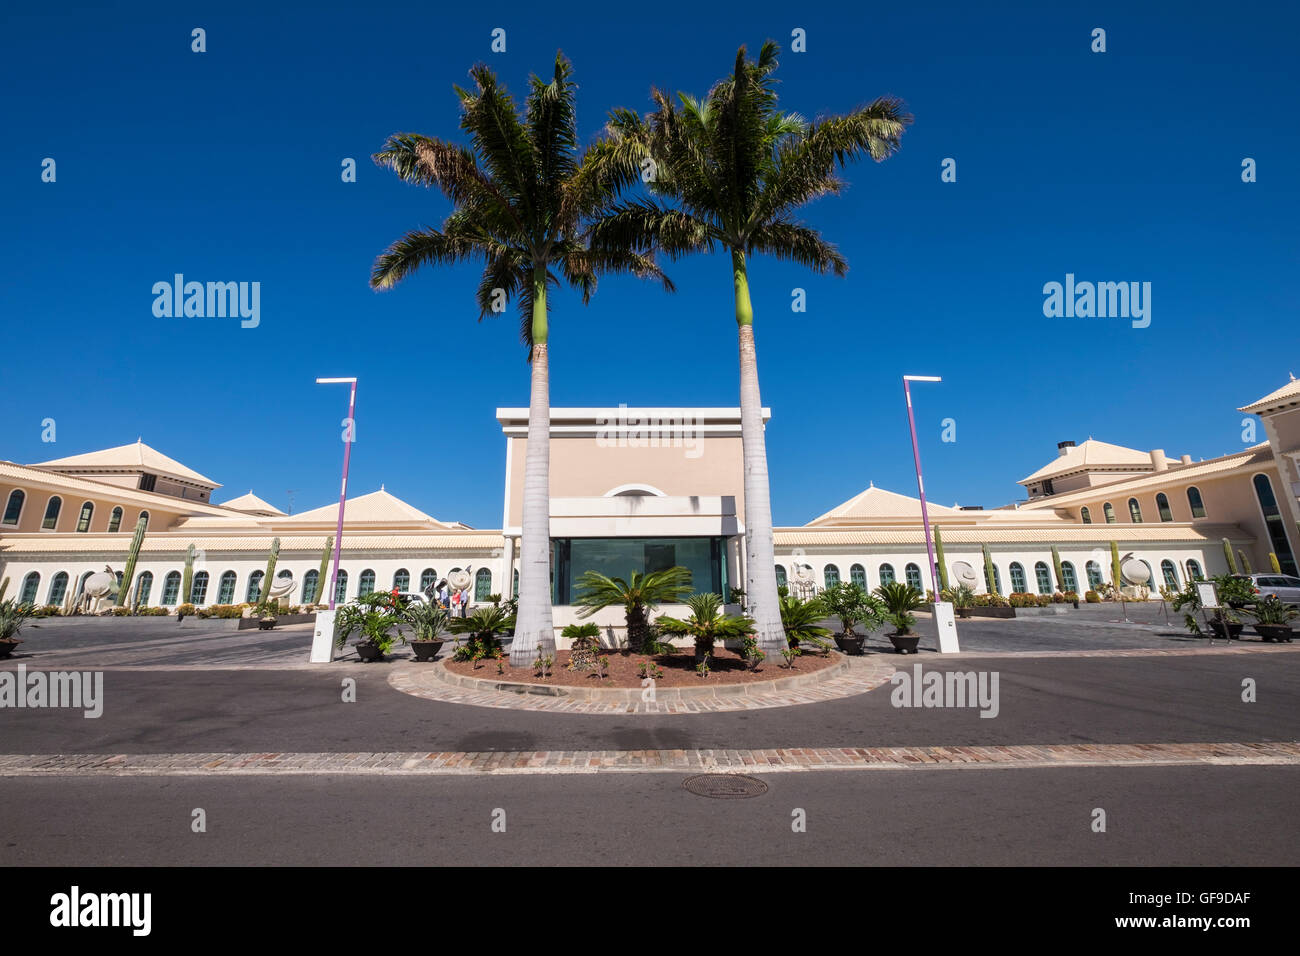 Sol Melia Palacio de Isora hotel a cinque stelle in Alcala, Tenerife, Isole Canarie, Spagna Foto Stock